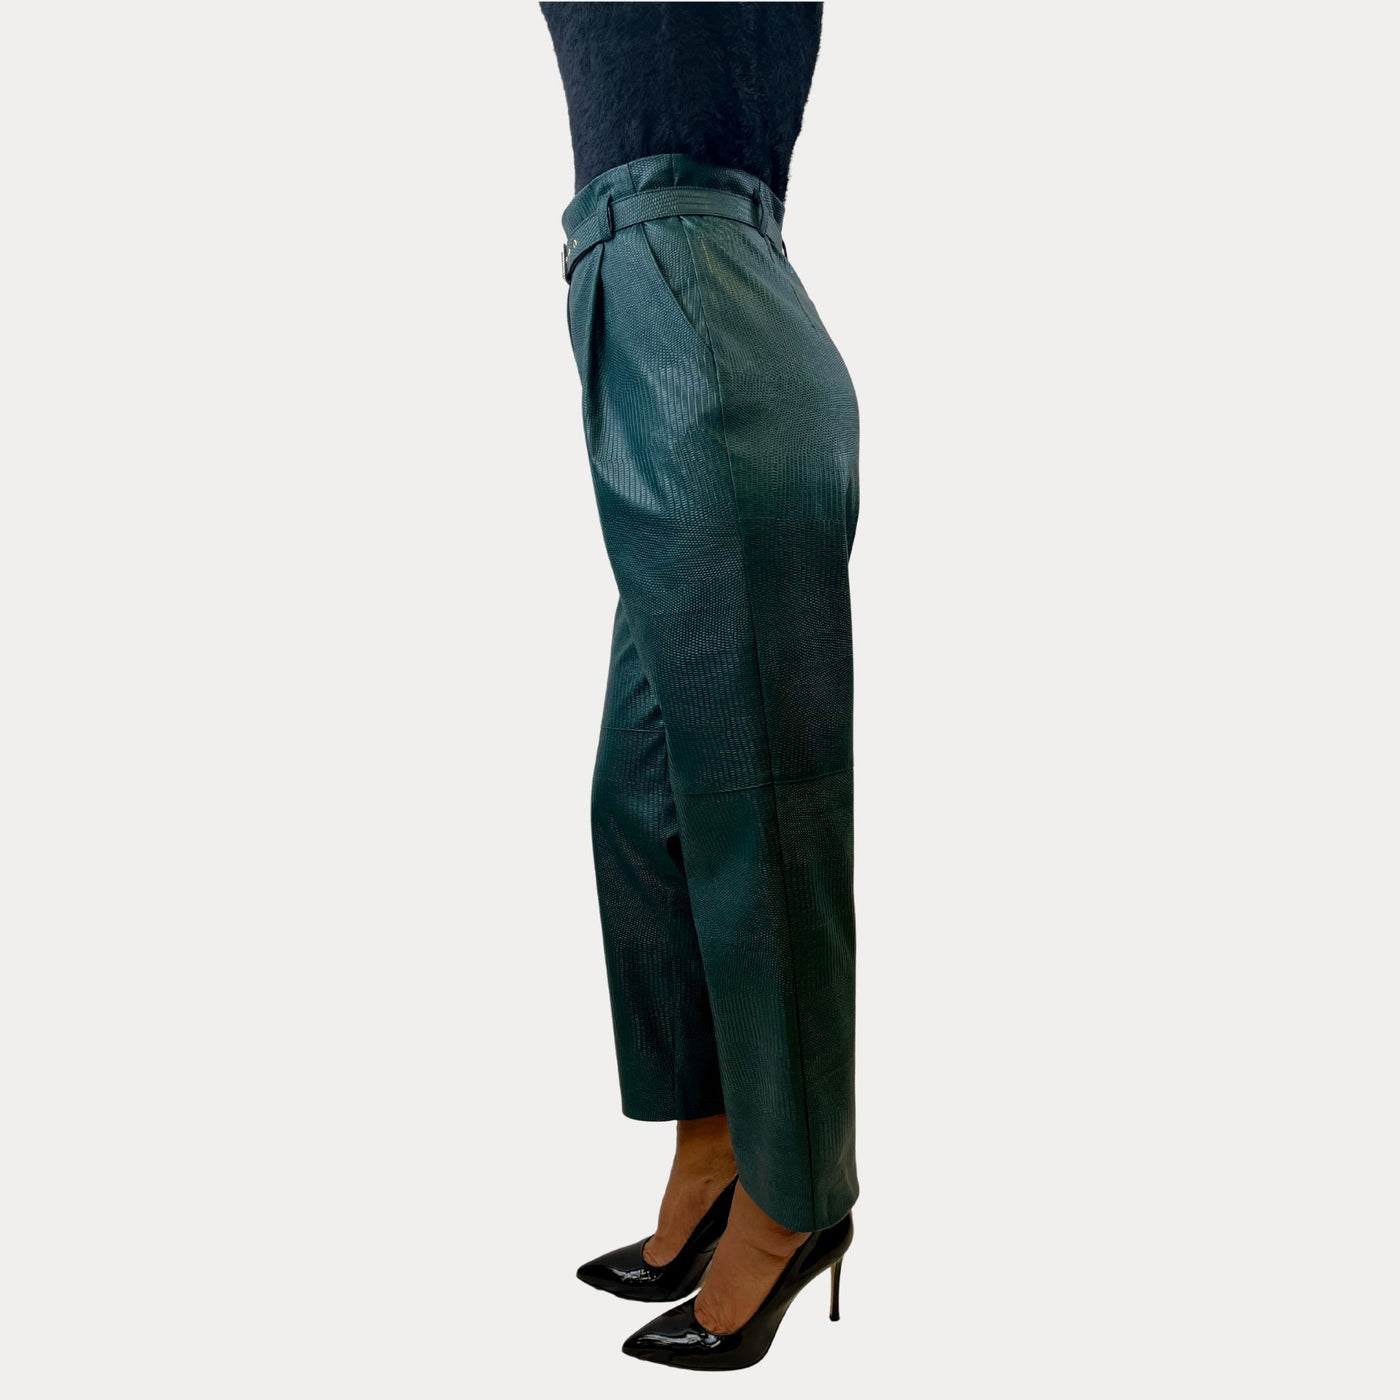 Pantalone Donna modello classico con cinta